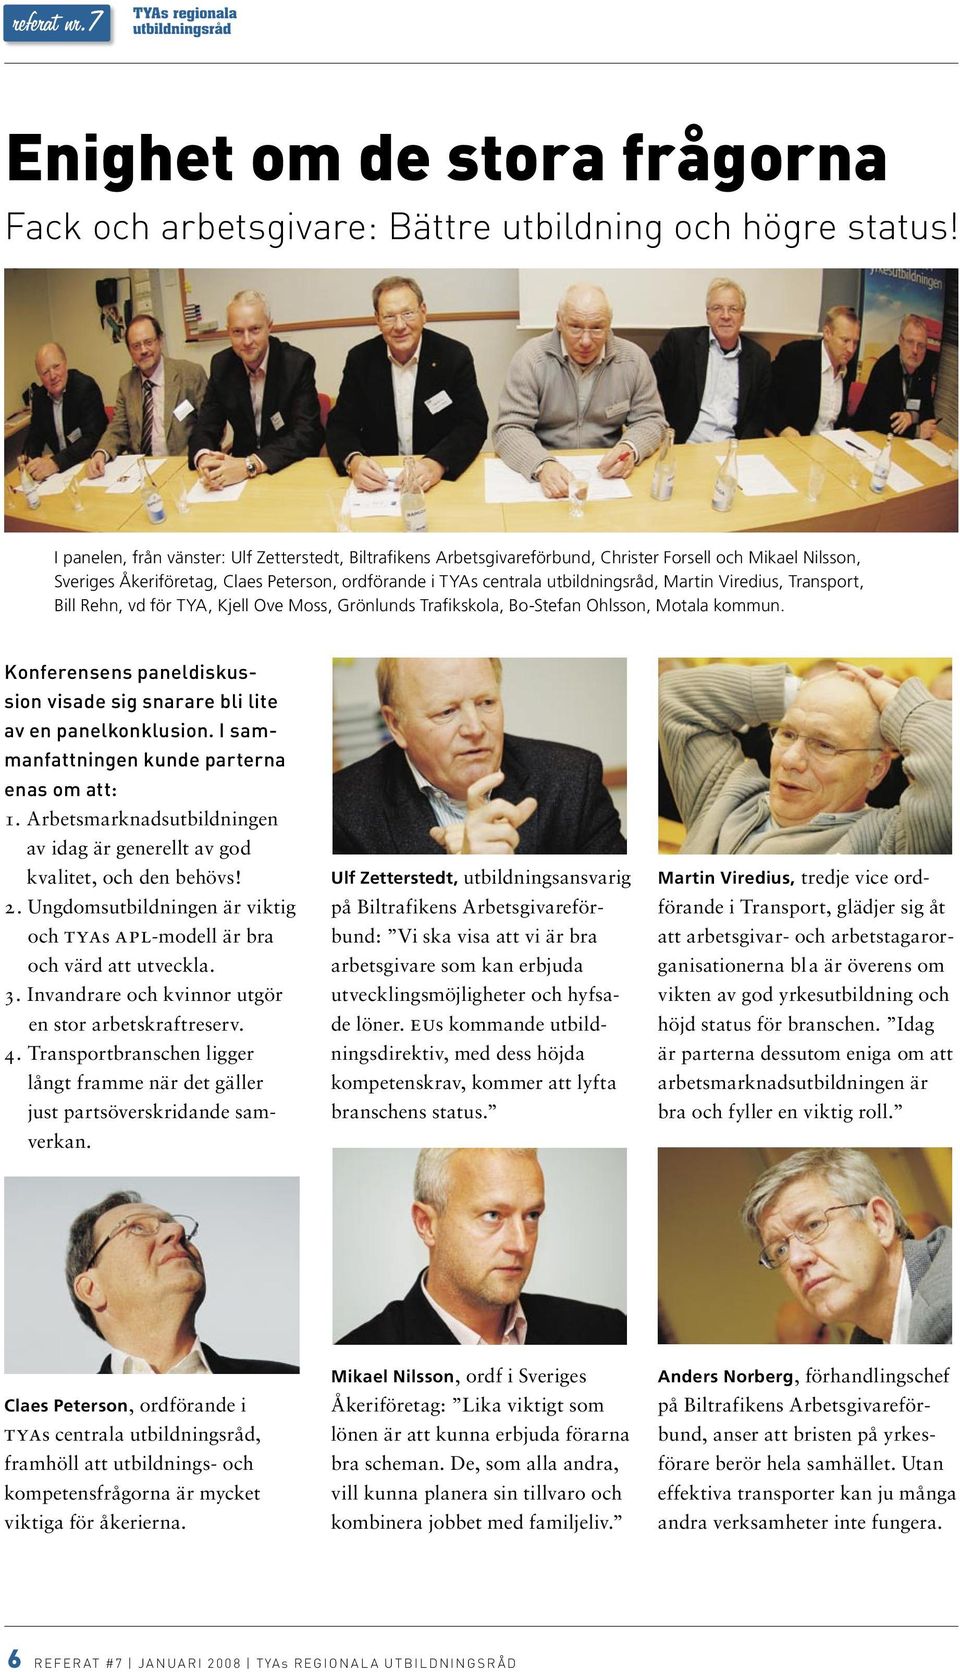 Martin Viredius, Transport, Bill Rehn, vd för TYA, Kjell Ove Moss, Grönlunds Trafikskola, Bo-Stefan Ohlsson, Motala kommun.